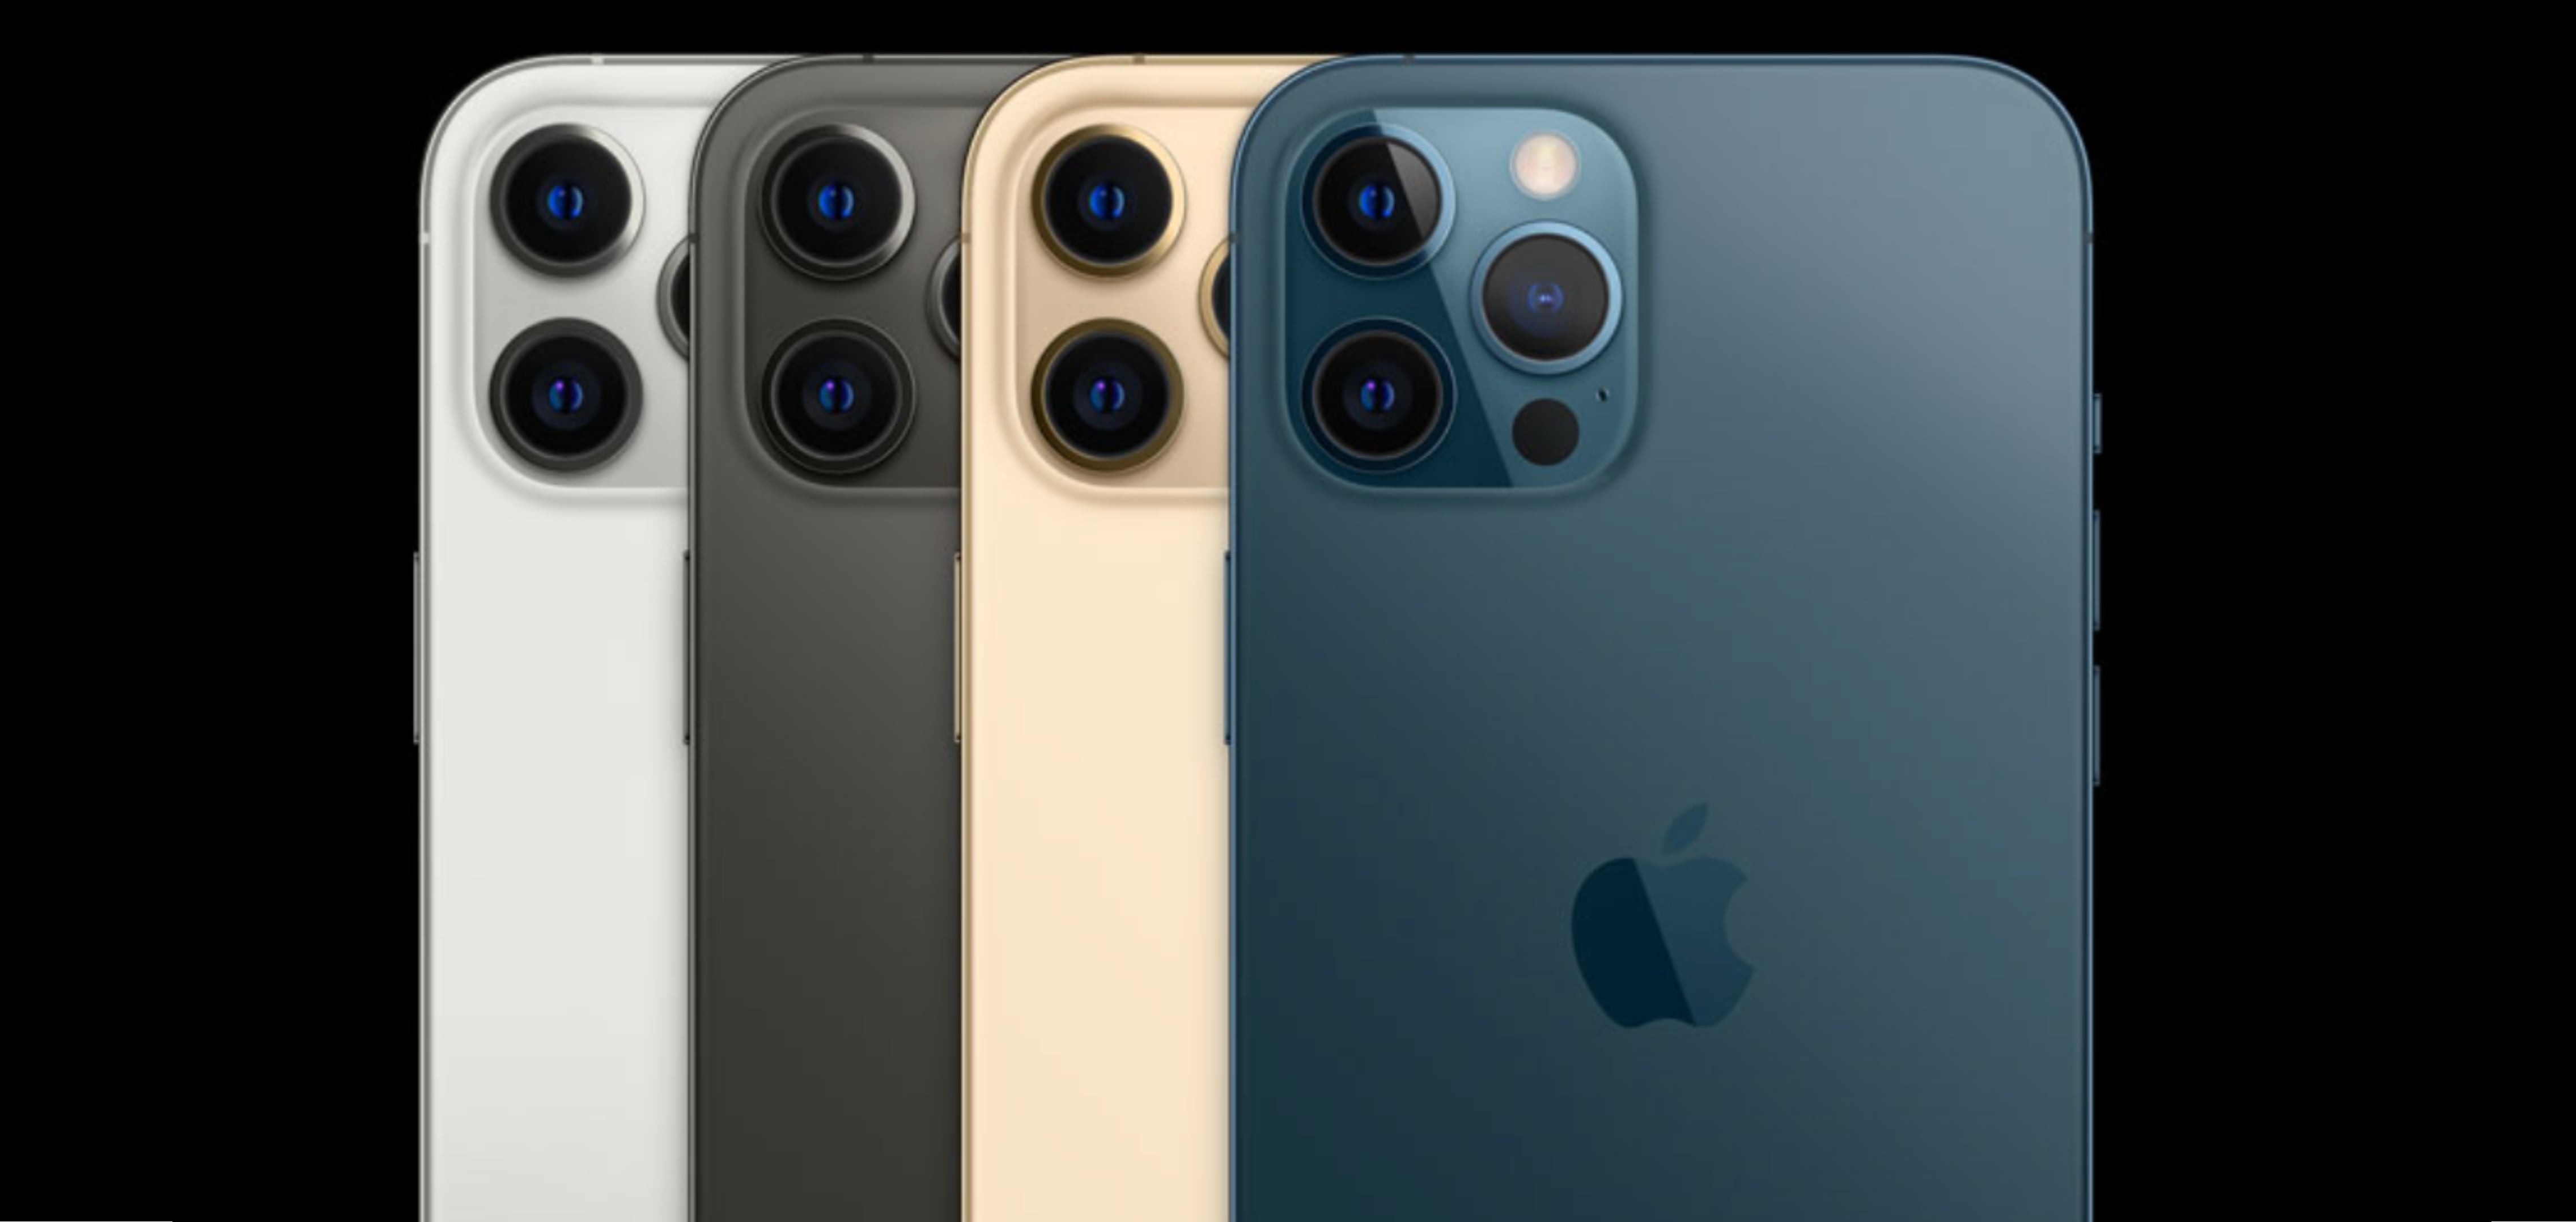 Nuevo iPhone 12 Pro y iPhone 12 Pro Max ¡Conoce todo sobre ellos! - Blog  K-tuin